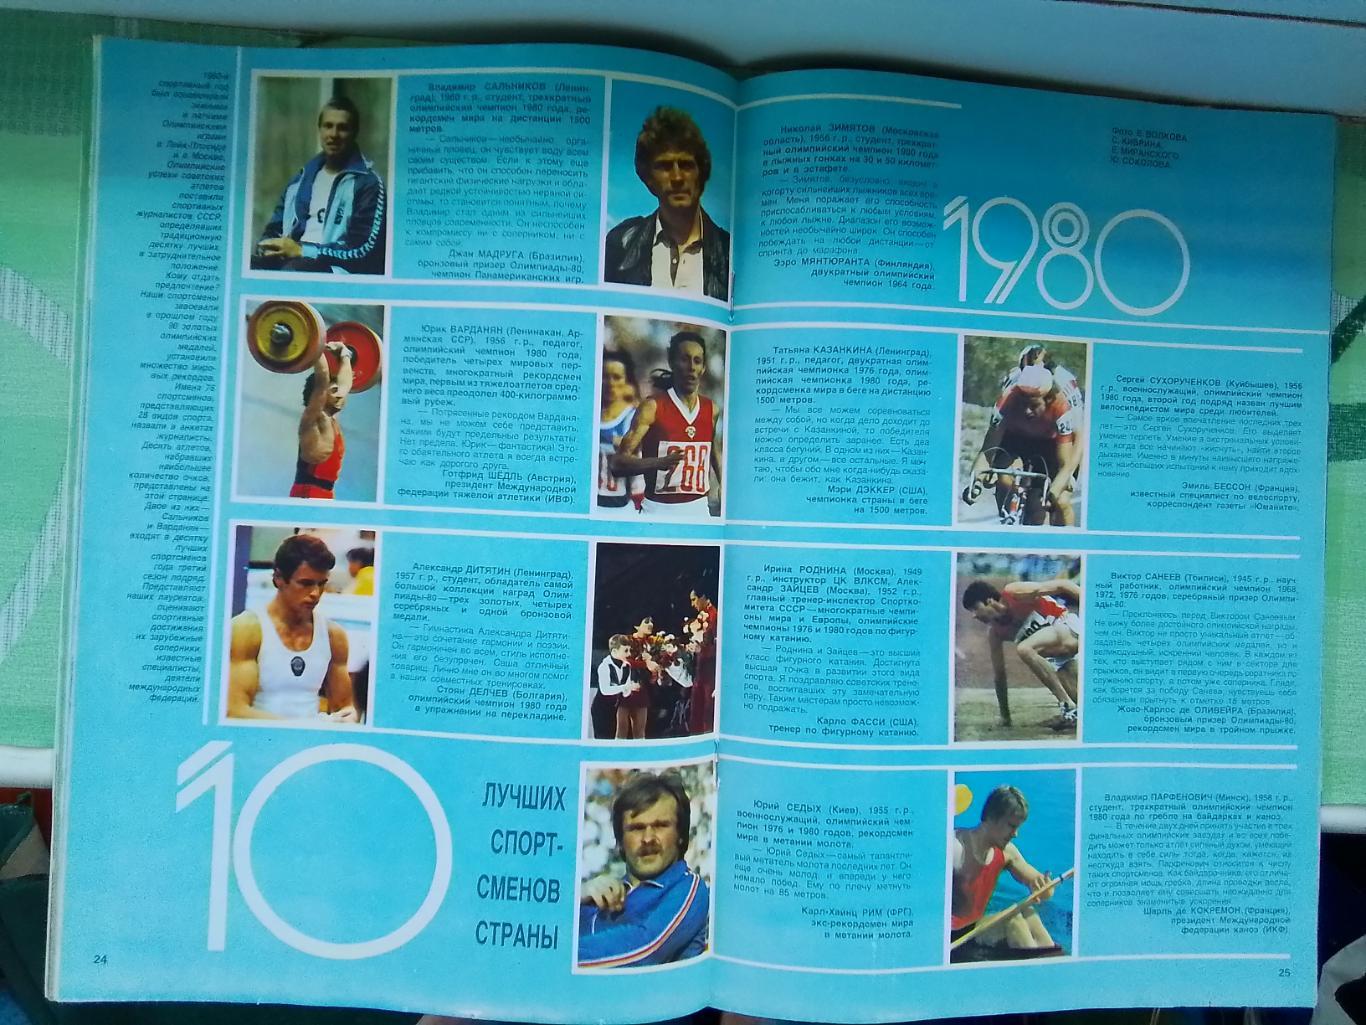 Журнал Спорт в СССР 1981 N 2 Превью футб сезона Приз Известий Игорь Бобрин 4